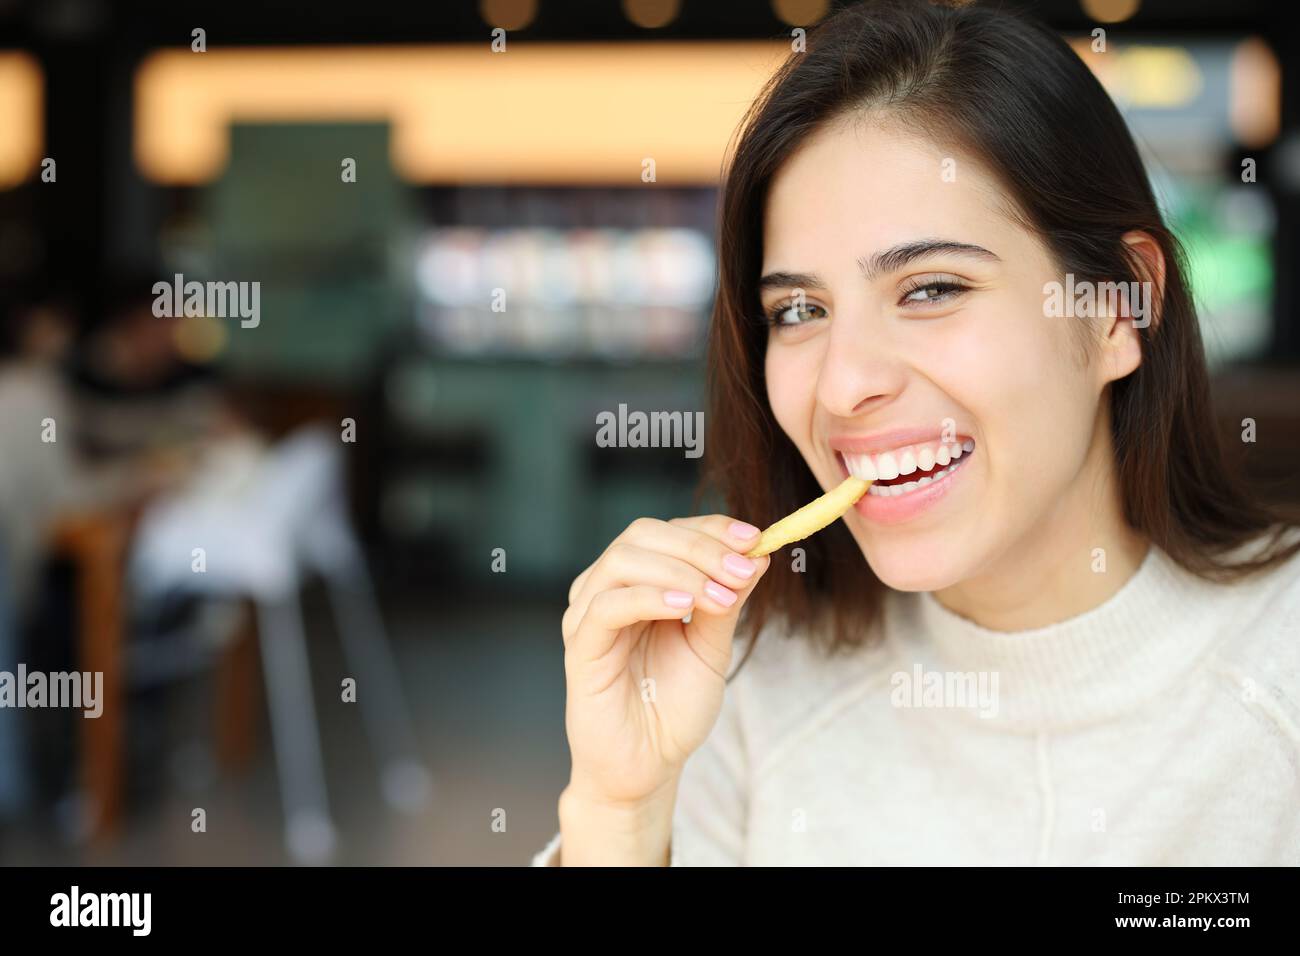 Bonne femme mangeant des frites en regardant un appareil photo dans un restaurant Banque D'Images